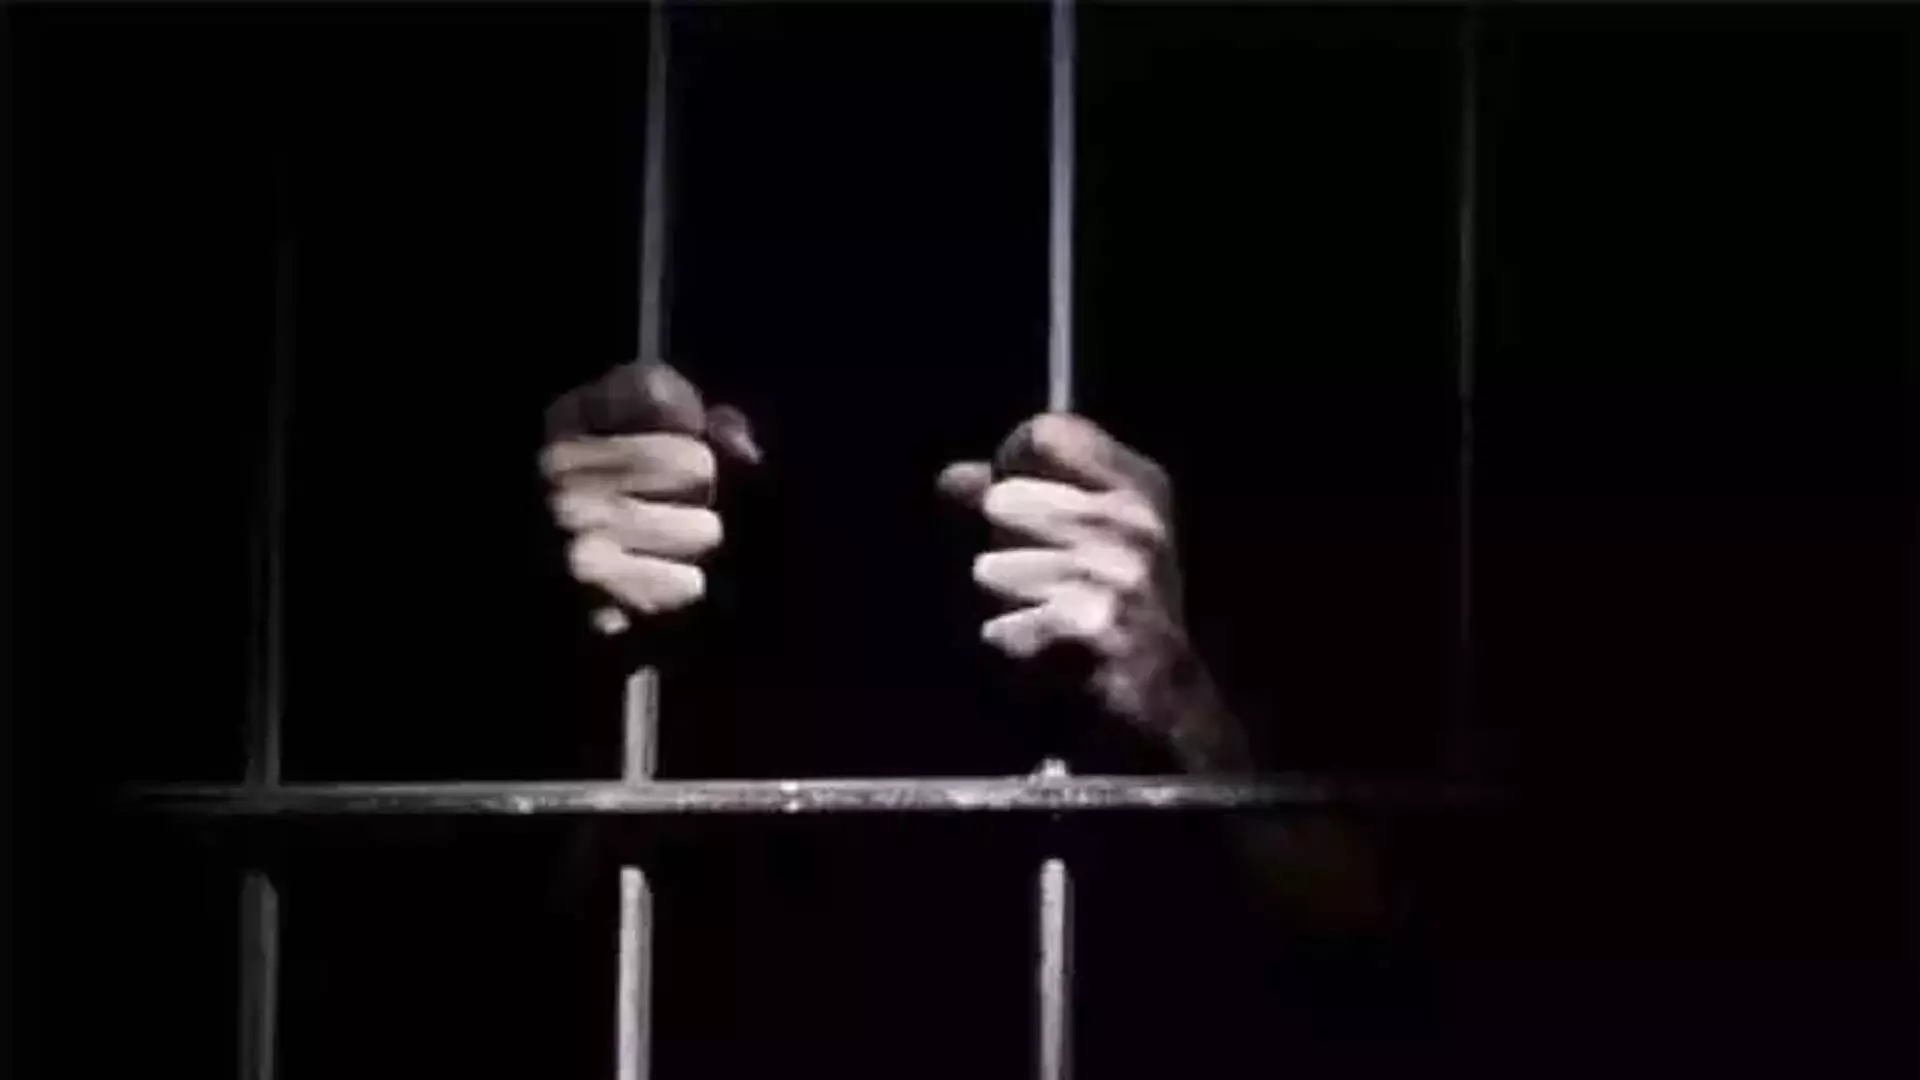 नाबालिग का यौन उत्पीड़न करने वाले शख्स को 10 साल की जेल